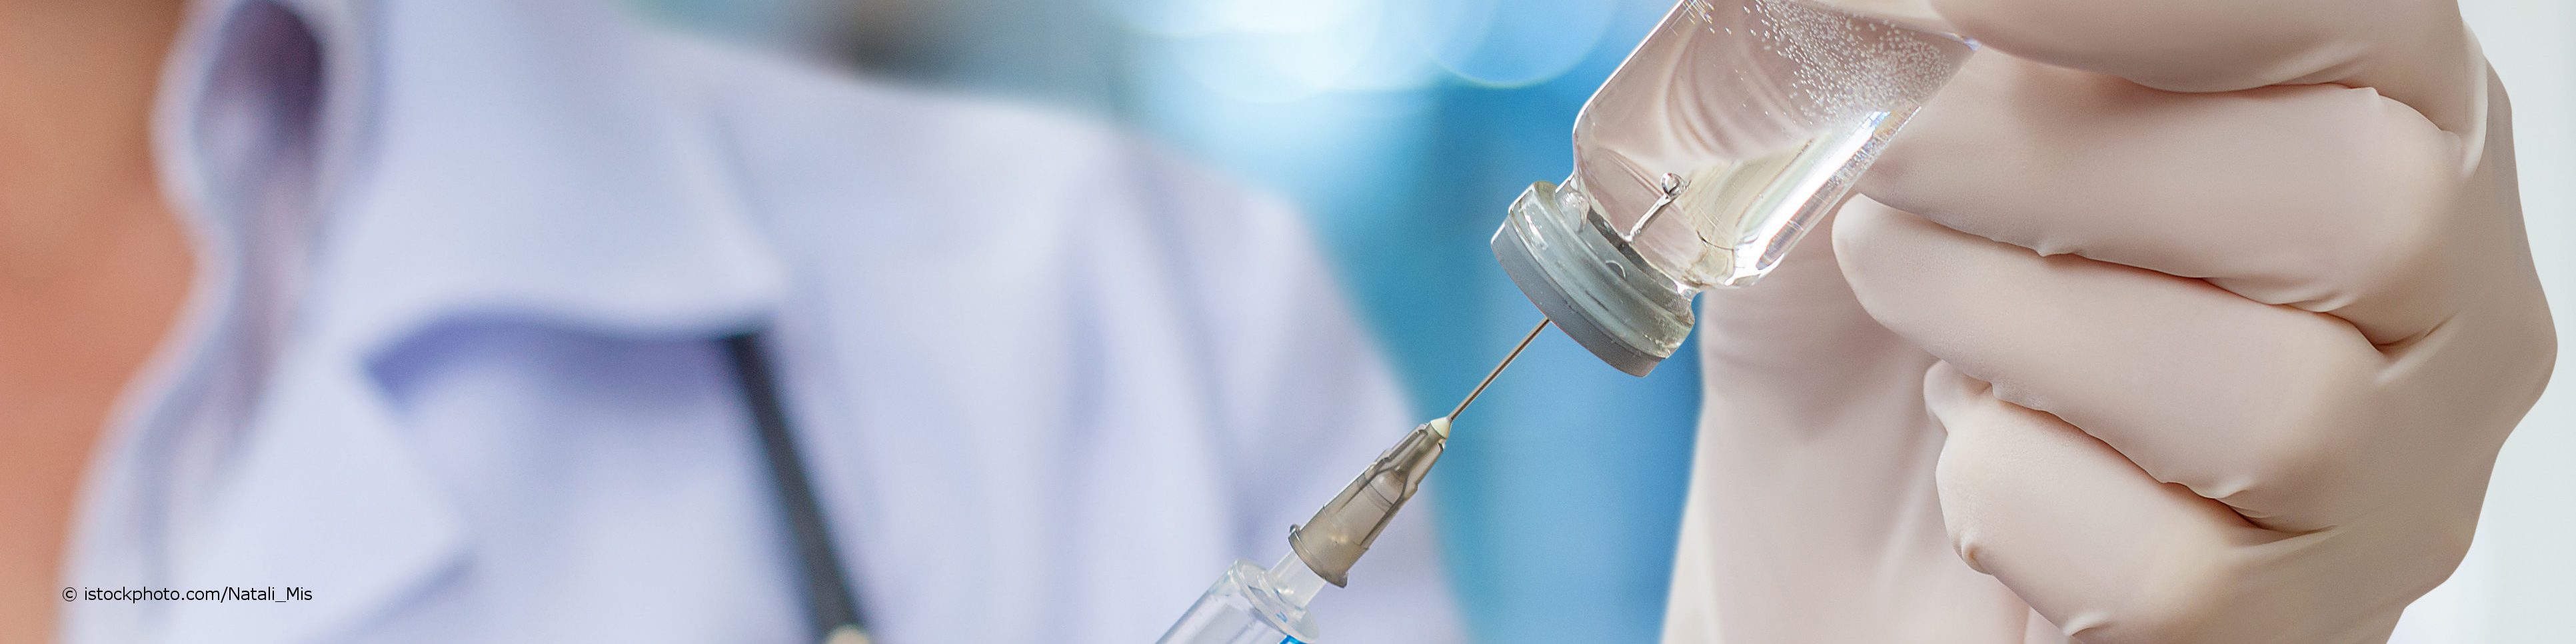 Arzt zieht Spritze mit Impfstoff zur Grundimmunisierung auf.